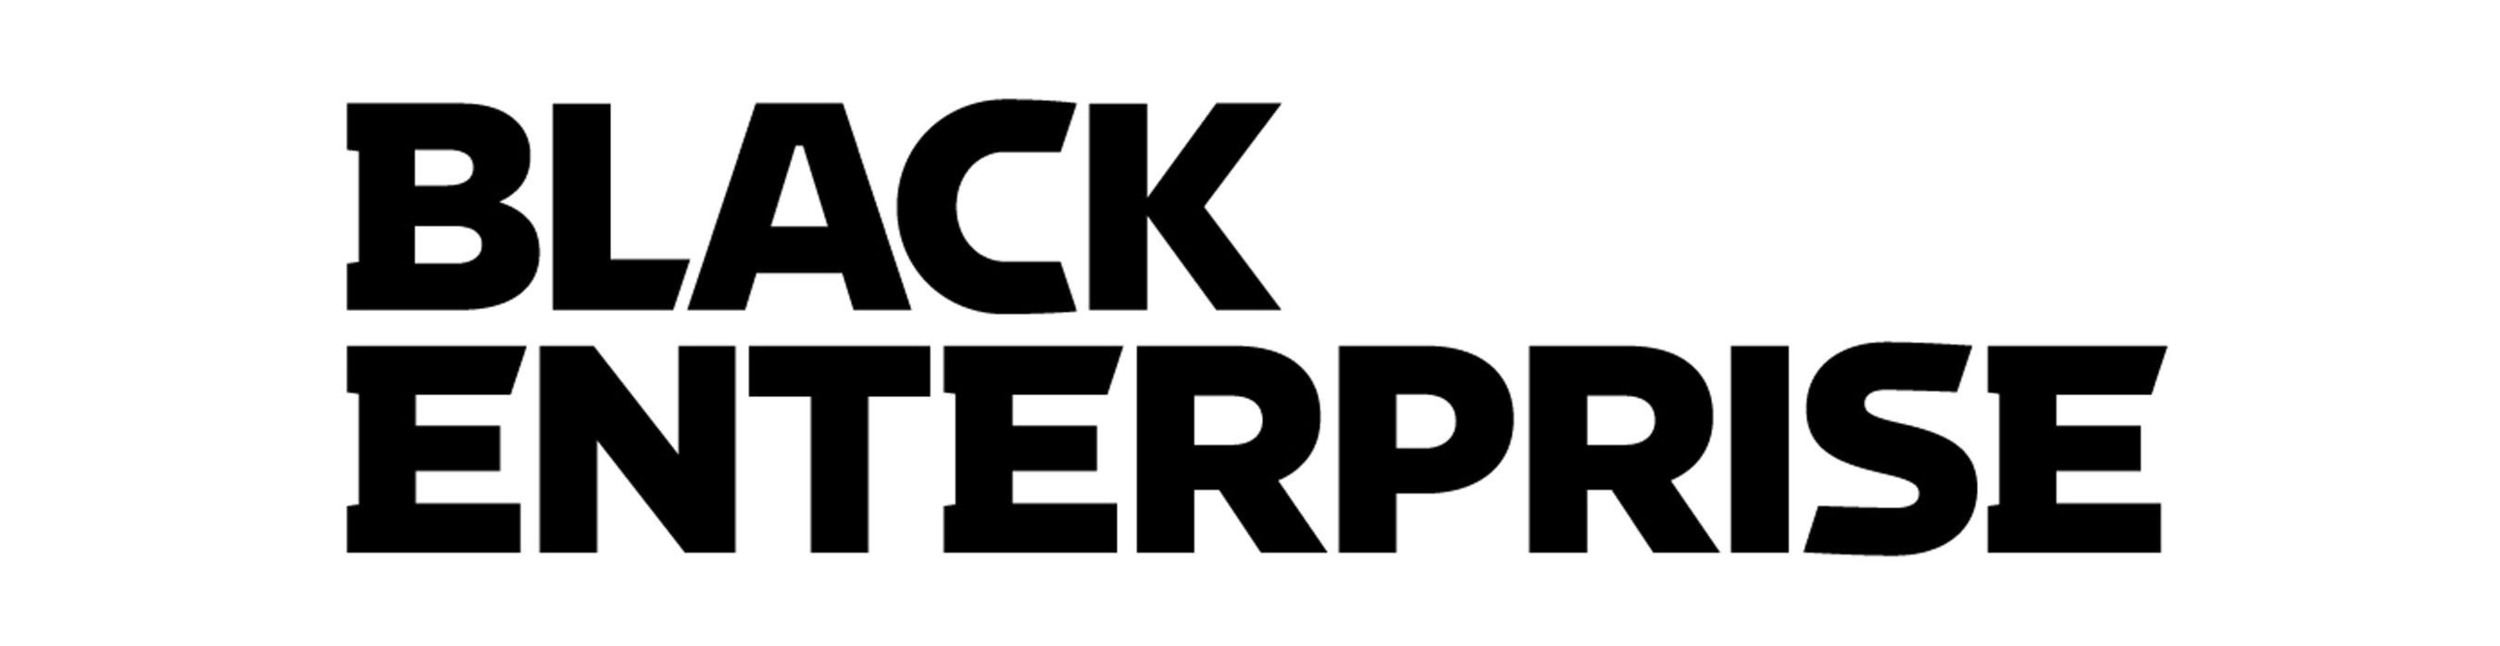 prn-black-enterprise-logo-1y-1-5-1high.jpg